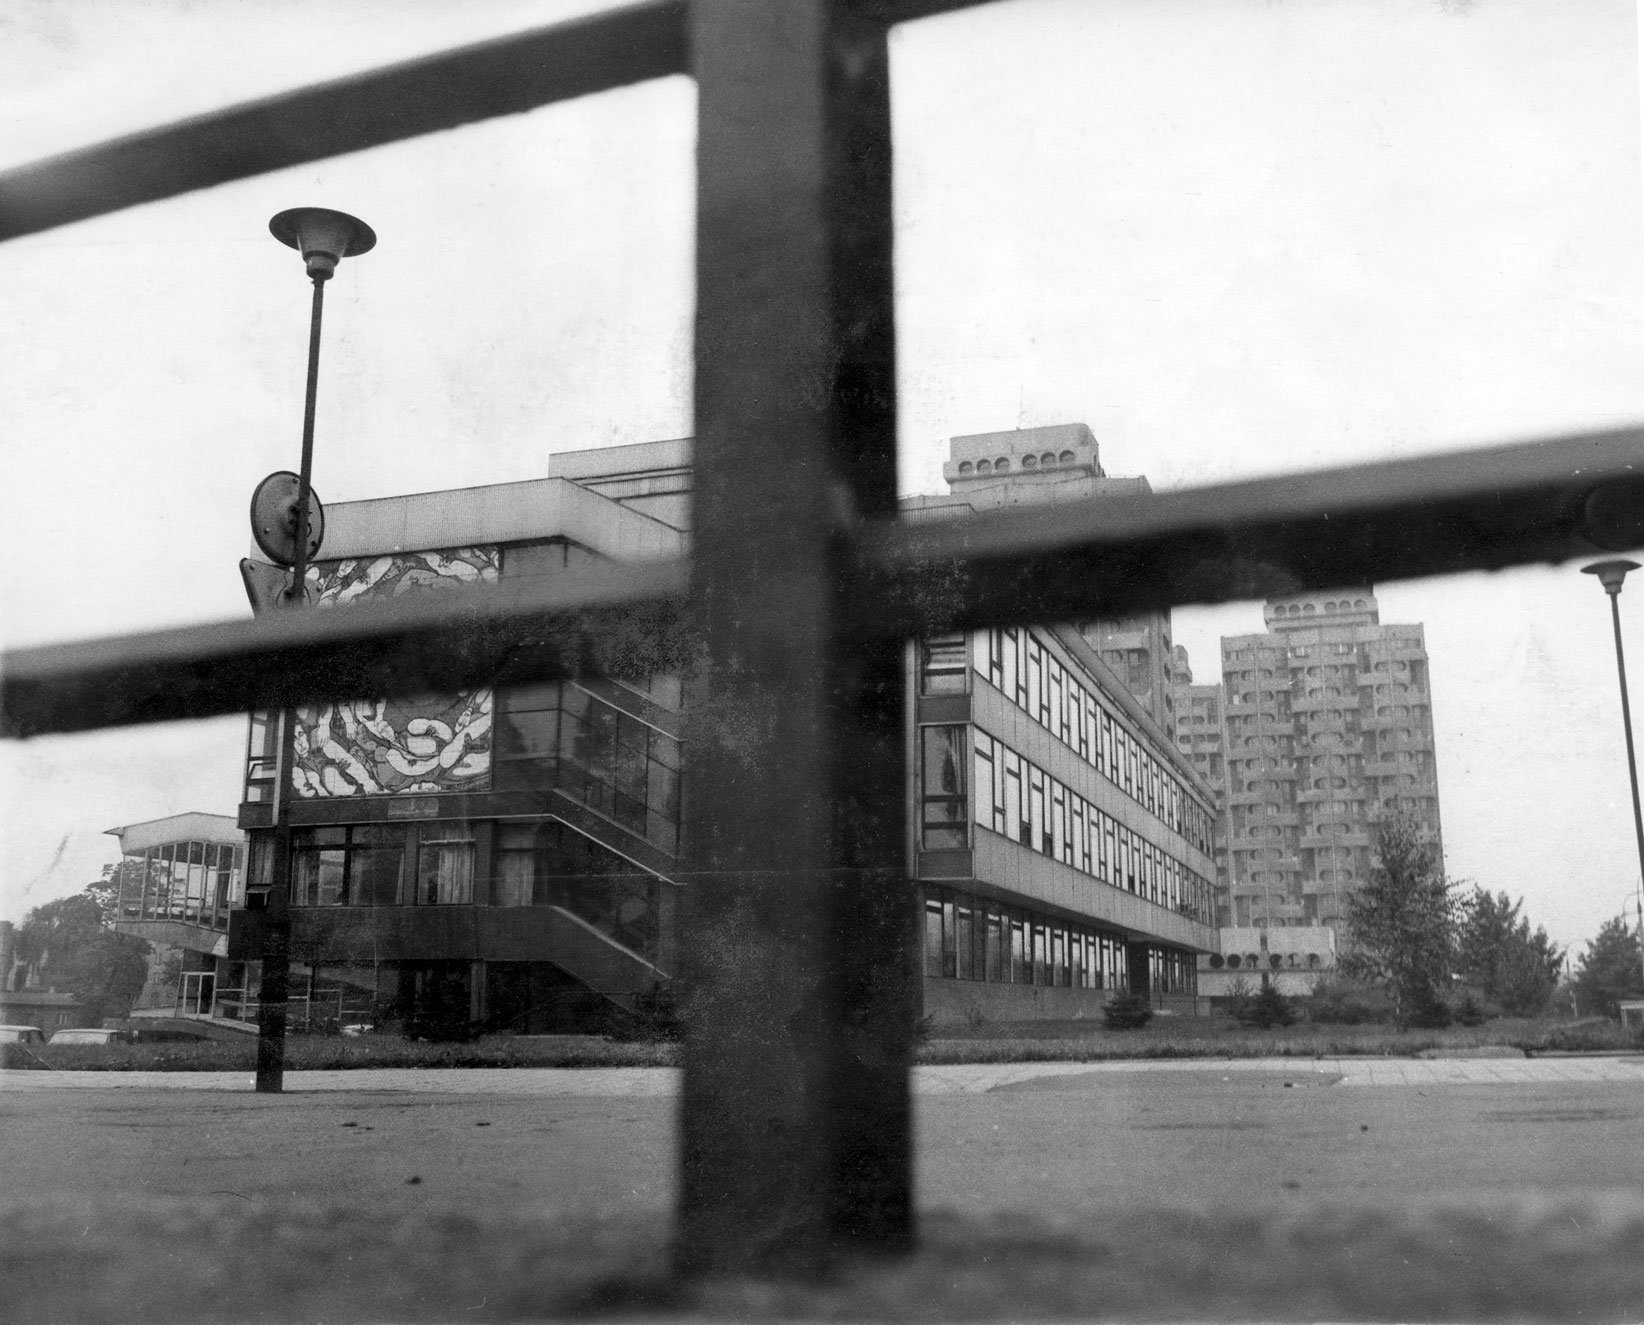 Czarno-biała archiwalna fotografia przedstawia widok na instytut matematyczny i bloki Manhattan.